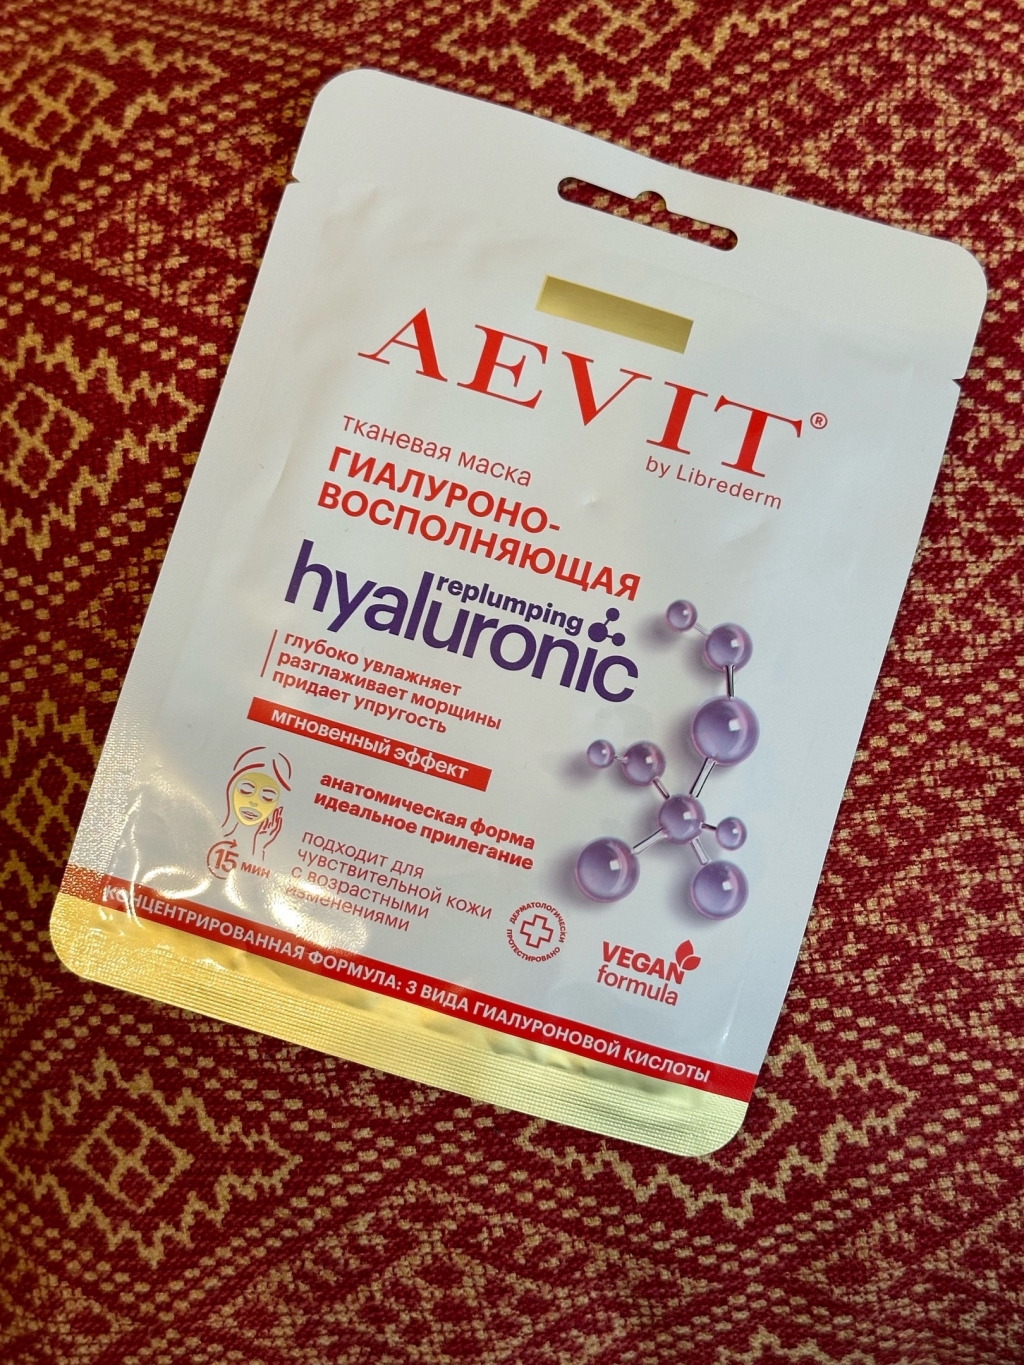 AEVIT AEVIT Маска тканевая гиалуроновосполняющая коллекции HYALURONIC 32 гр - Обновление кожи за 20 минут!